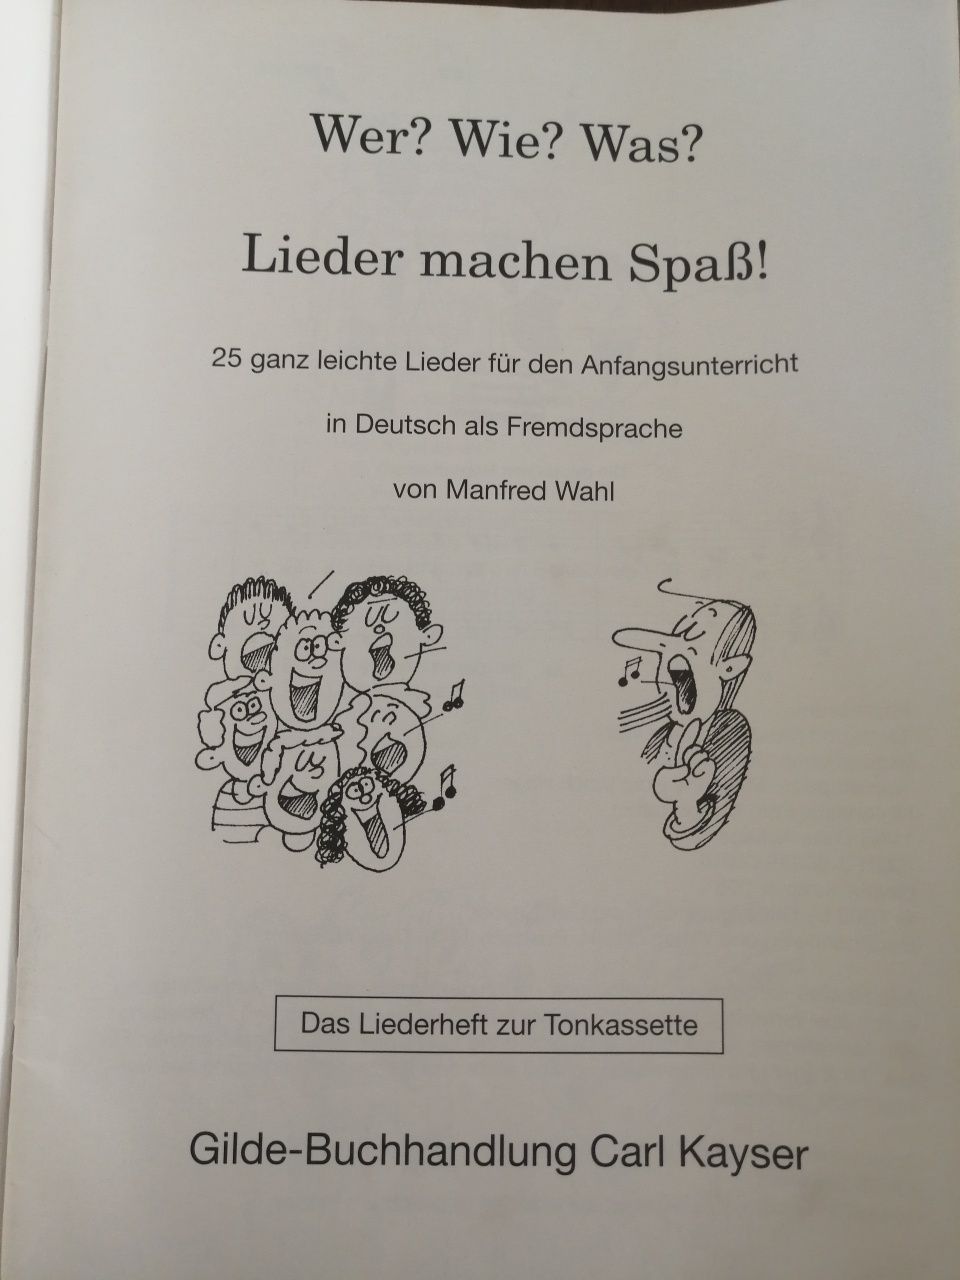 Книга с немецкими песнями для детей,, Wer?Wie?Was?'' Manfred Wahl